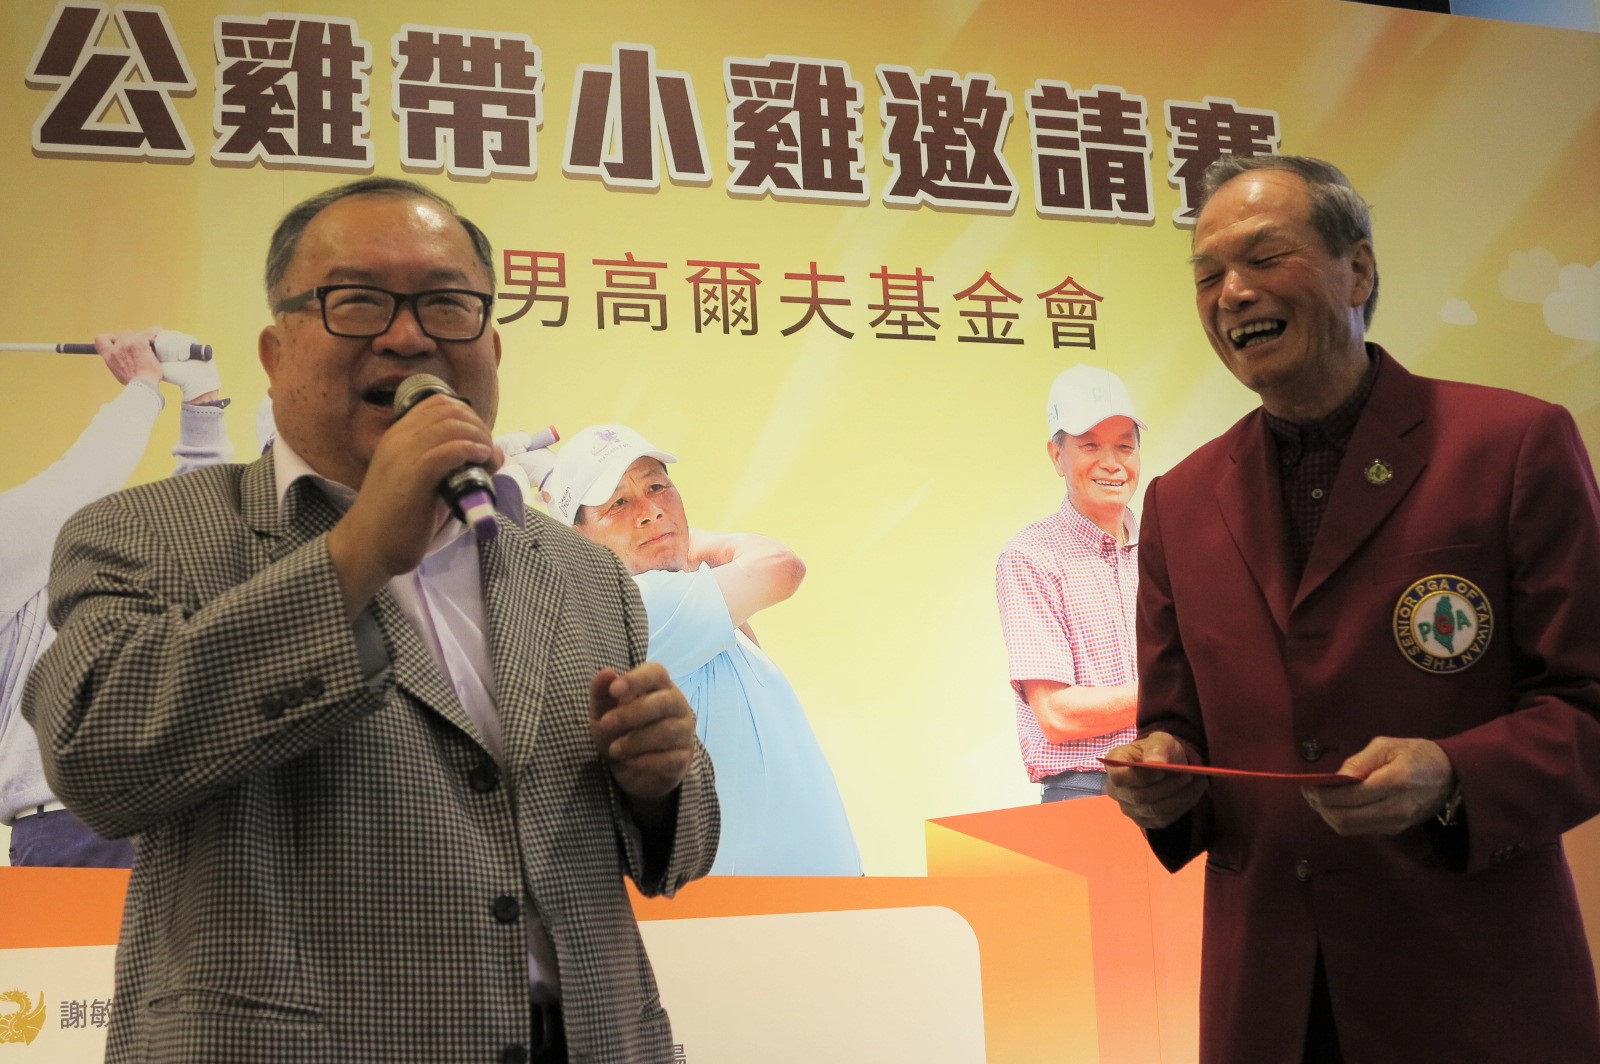 主人翁謝敏男(右)已有76勝，當天剛好又打出同年紀的76桿，讓他很高興笑得開懷。左為富順纖維董事長陳玉明。圖/高爾夫文摘